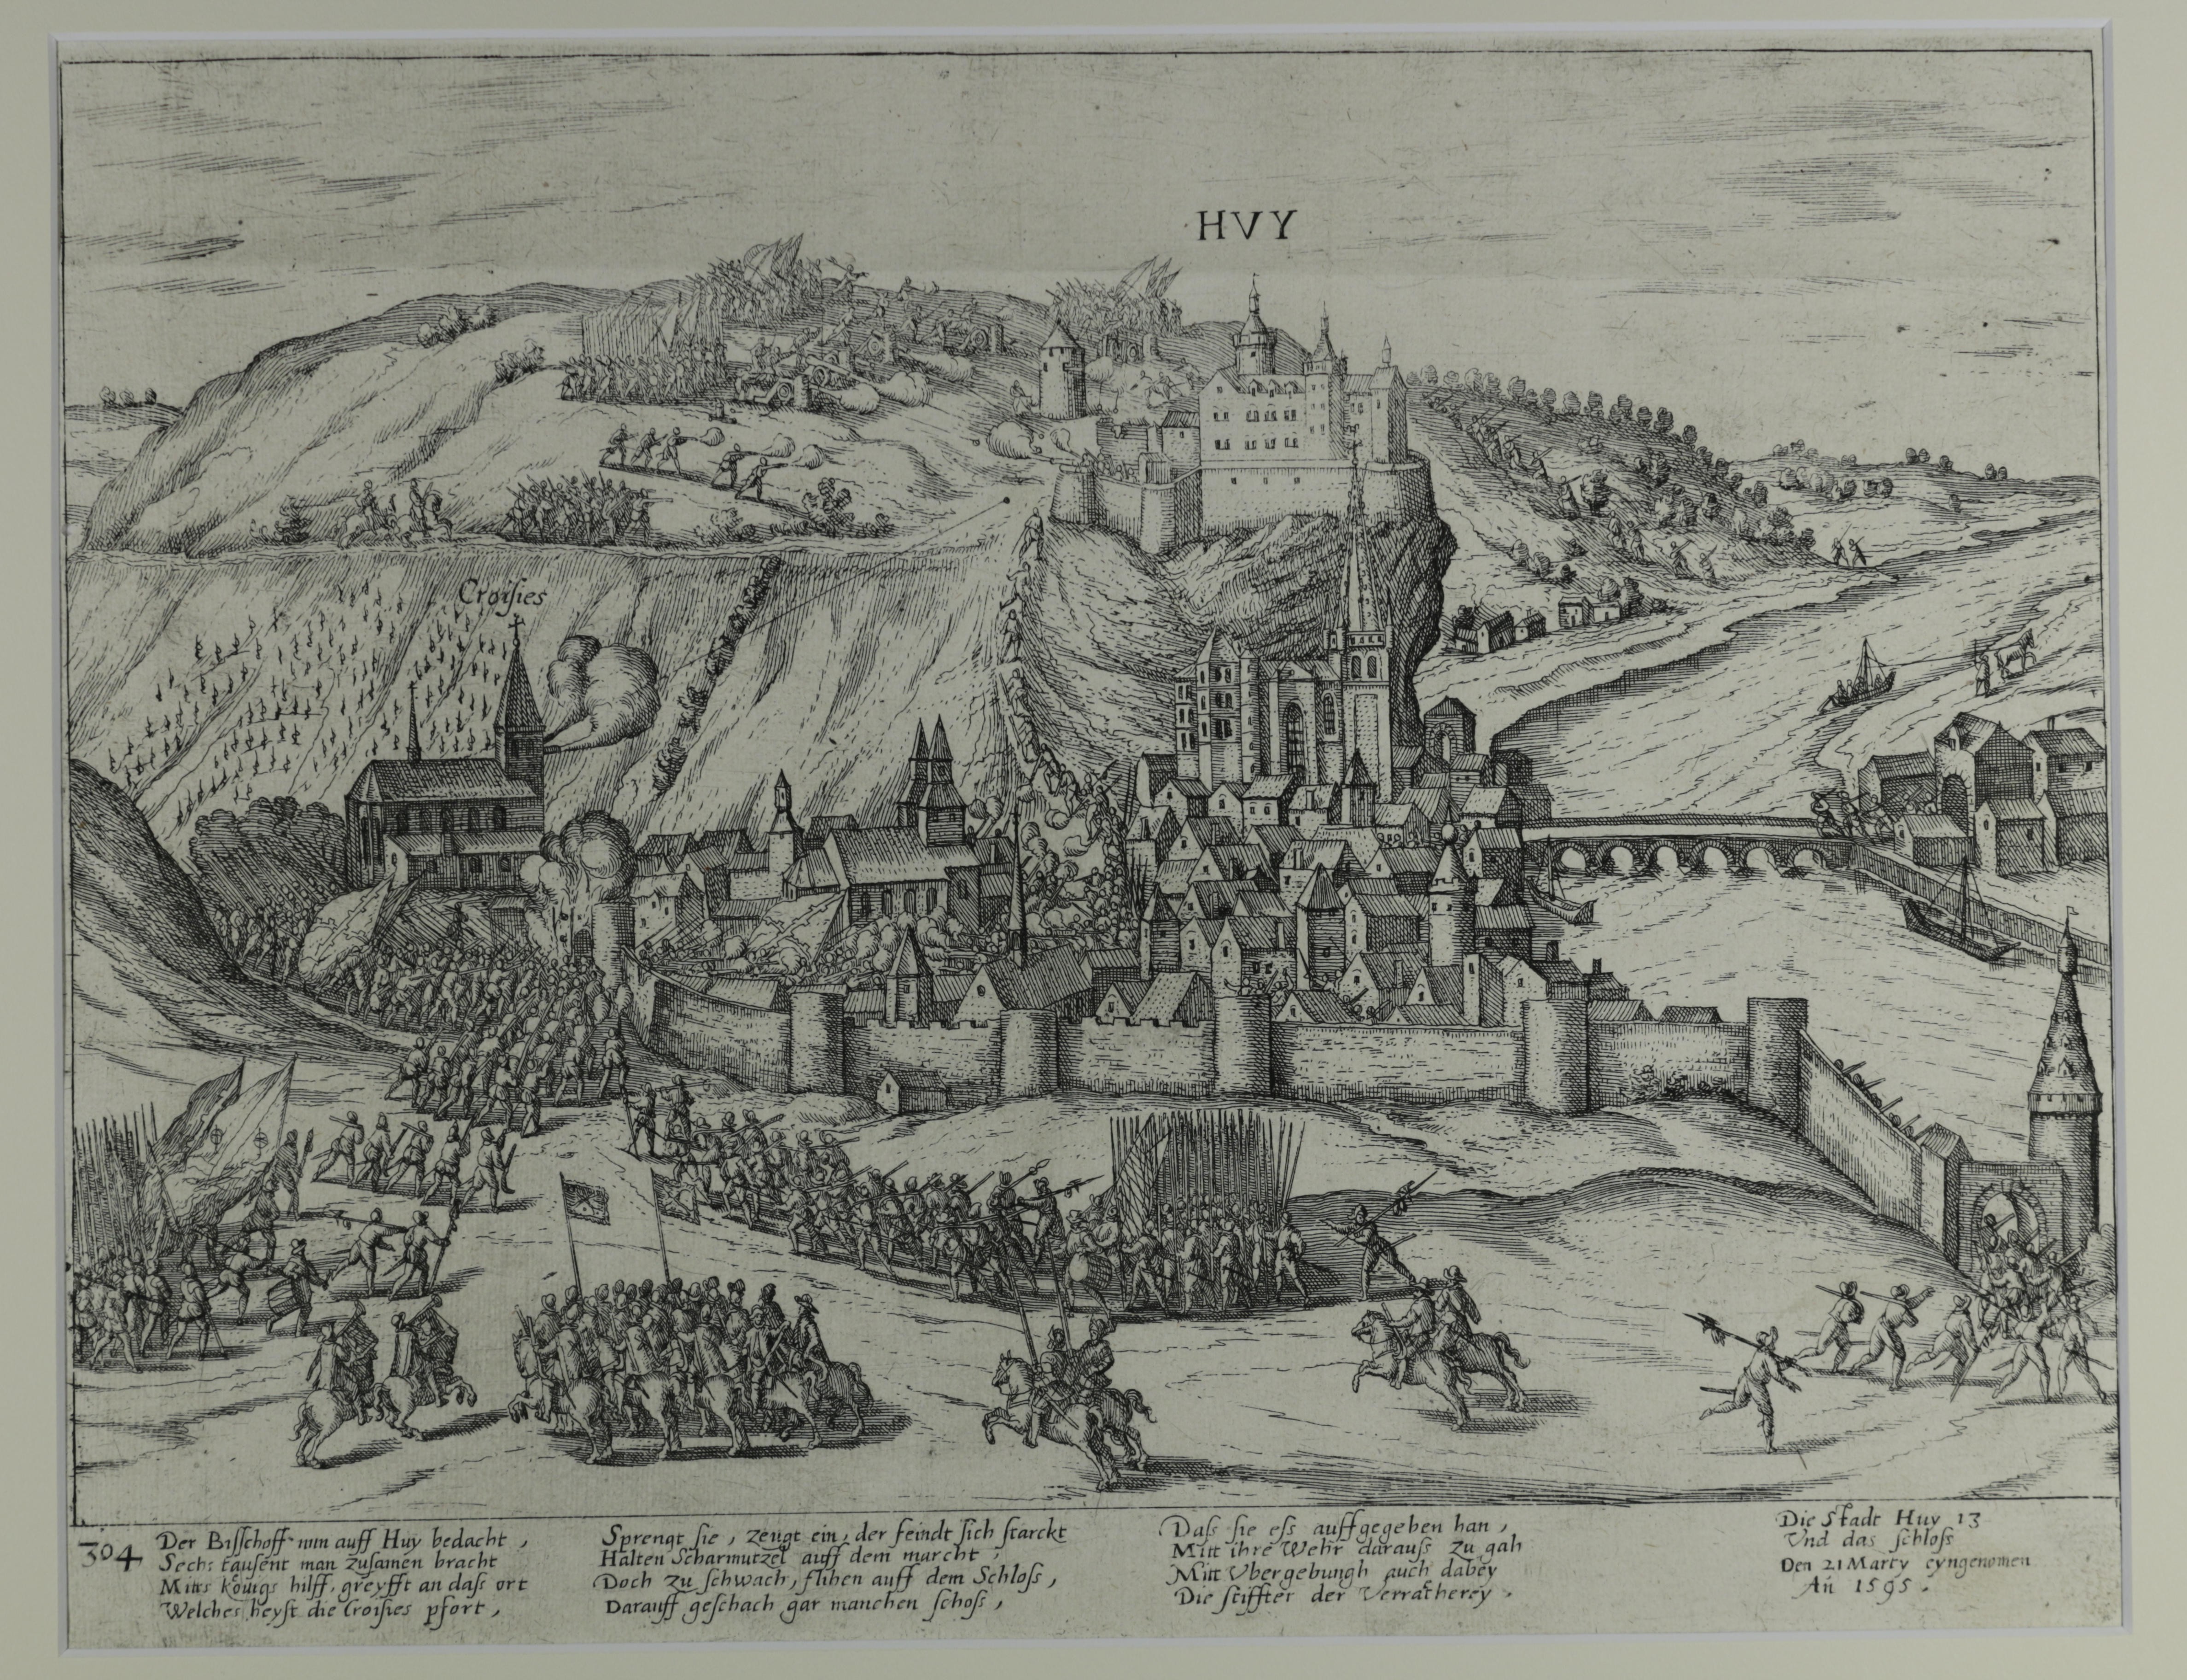 Kupferstich zur Eroberung von Huy im Truchsessischen Krieg, März 1595 (Hogenberg) (Städtisches Museum Schloss Rheydt CC BY)